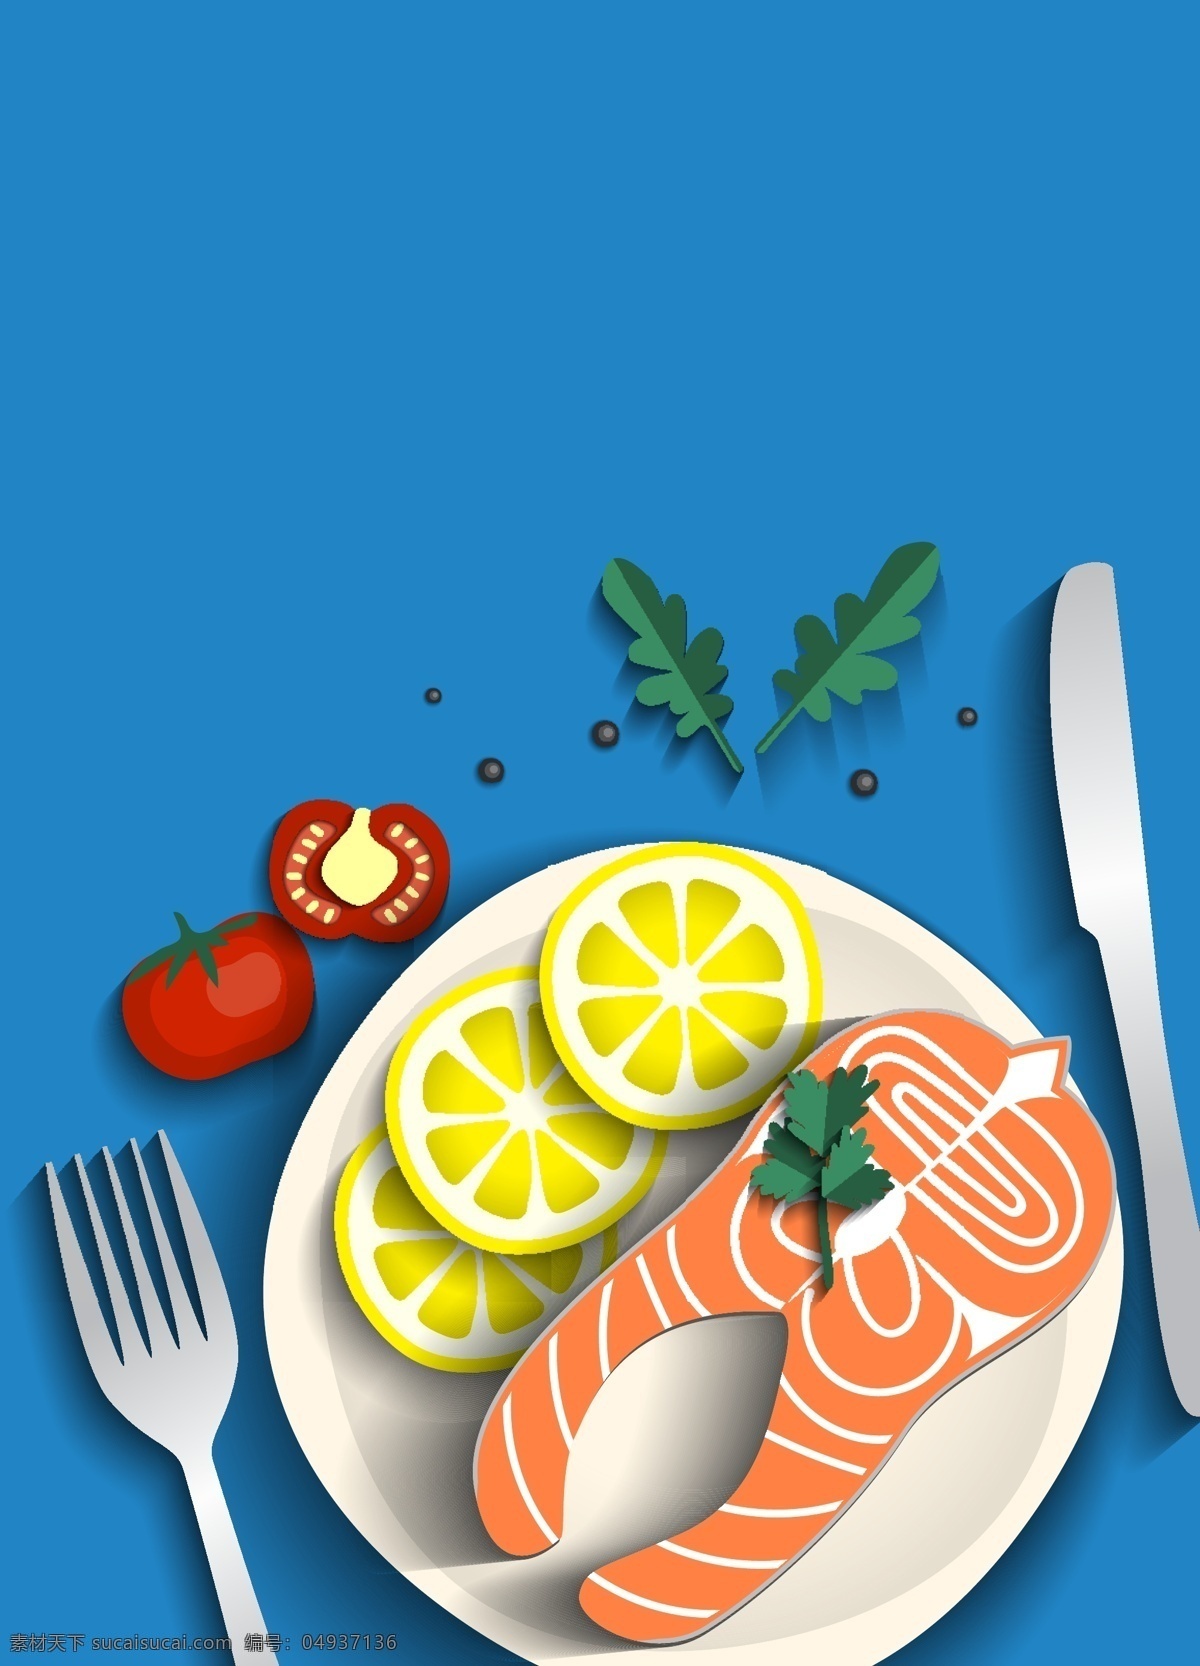 扒鲑鱼和蔬菜 背景 食物 菜单 绿色 厨房 绿色背景 健康 墙纸 蔬菜 五颜六色 烹饪 丰富多彩 早餐 工具 食物菜单 晚餐 吃